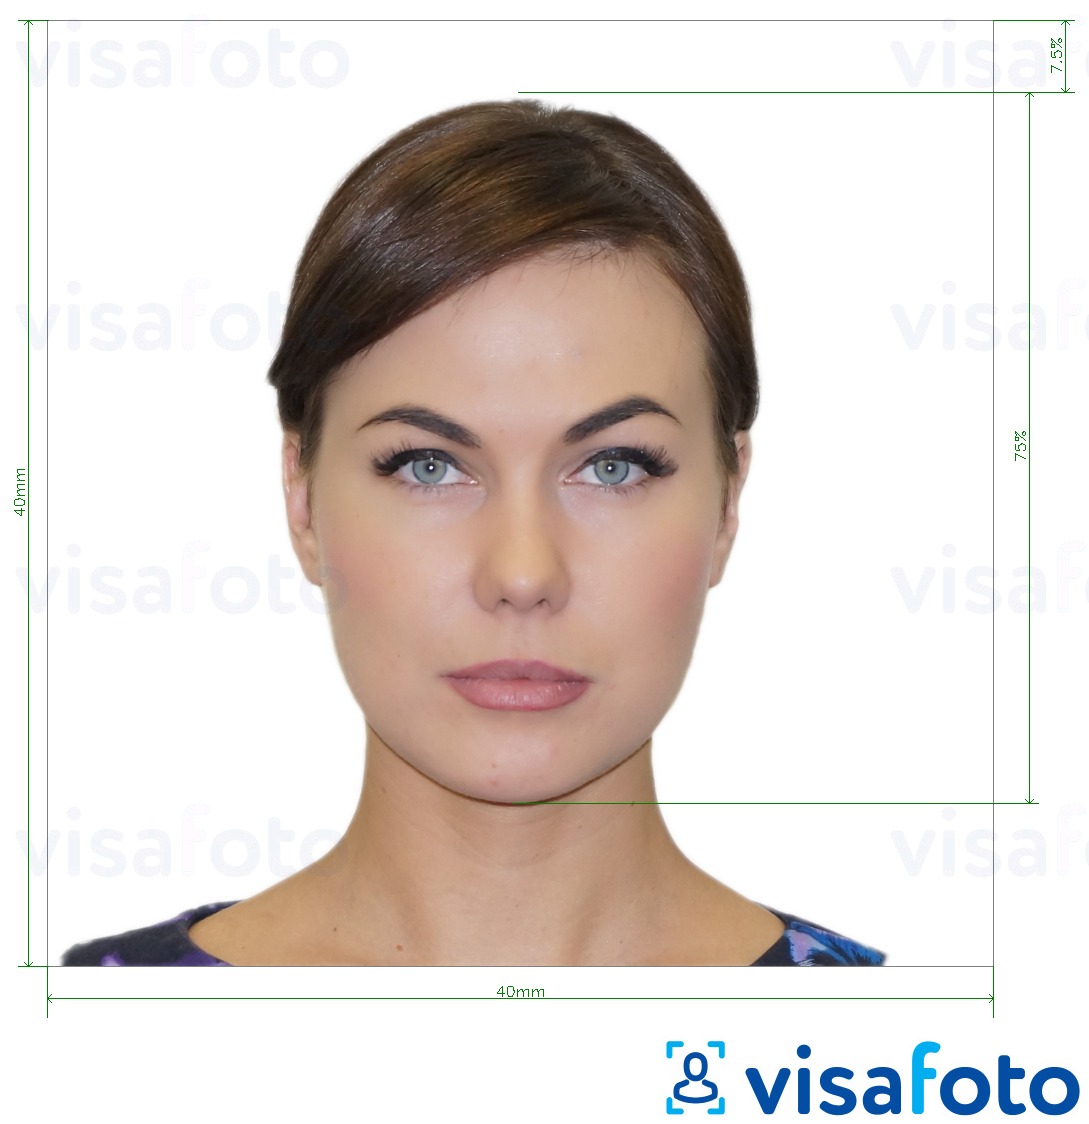 ตัวอย่างภาพถ่ายสำหรับ อิตาลี Passport 40x40 mm (LA consulate) 4x4 cm ด้วยข้อกำหนดเกี่ยวกับขนาดที่แน่นอน